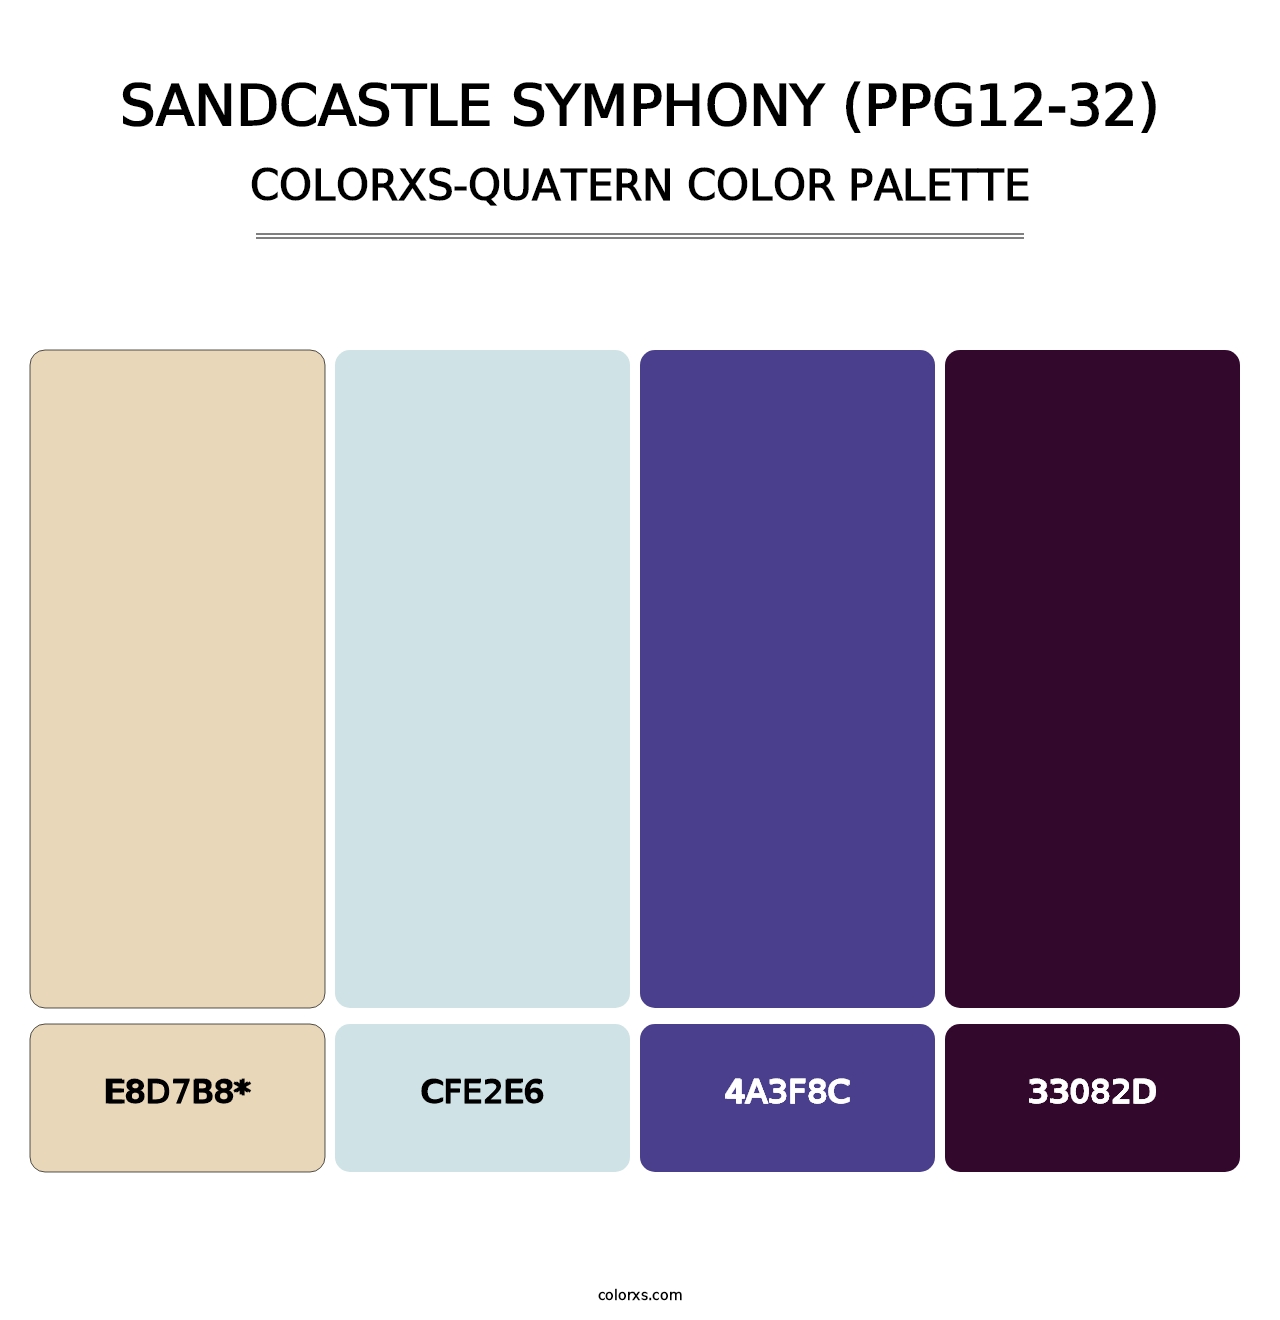 Sandcastle Symphony (PPG12-32) - Colorxs Quatern Palette